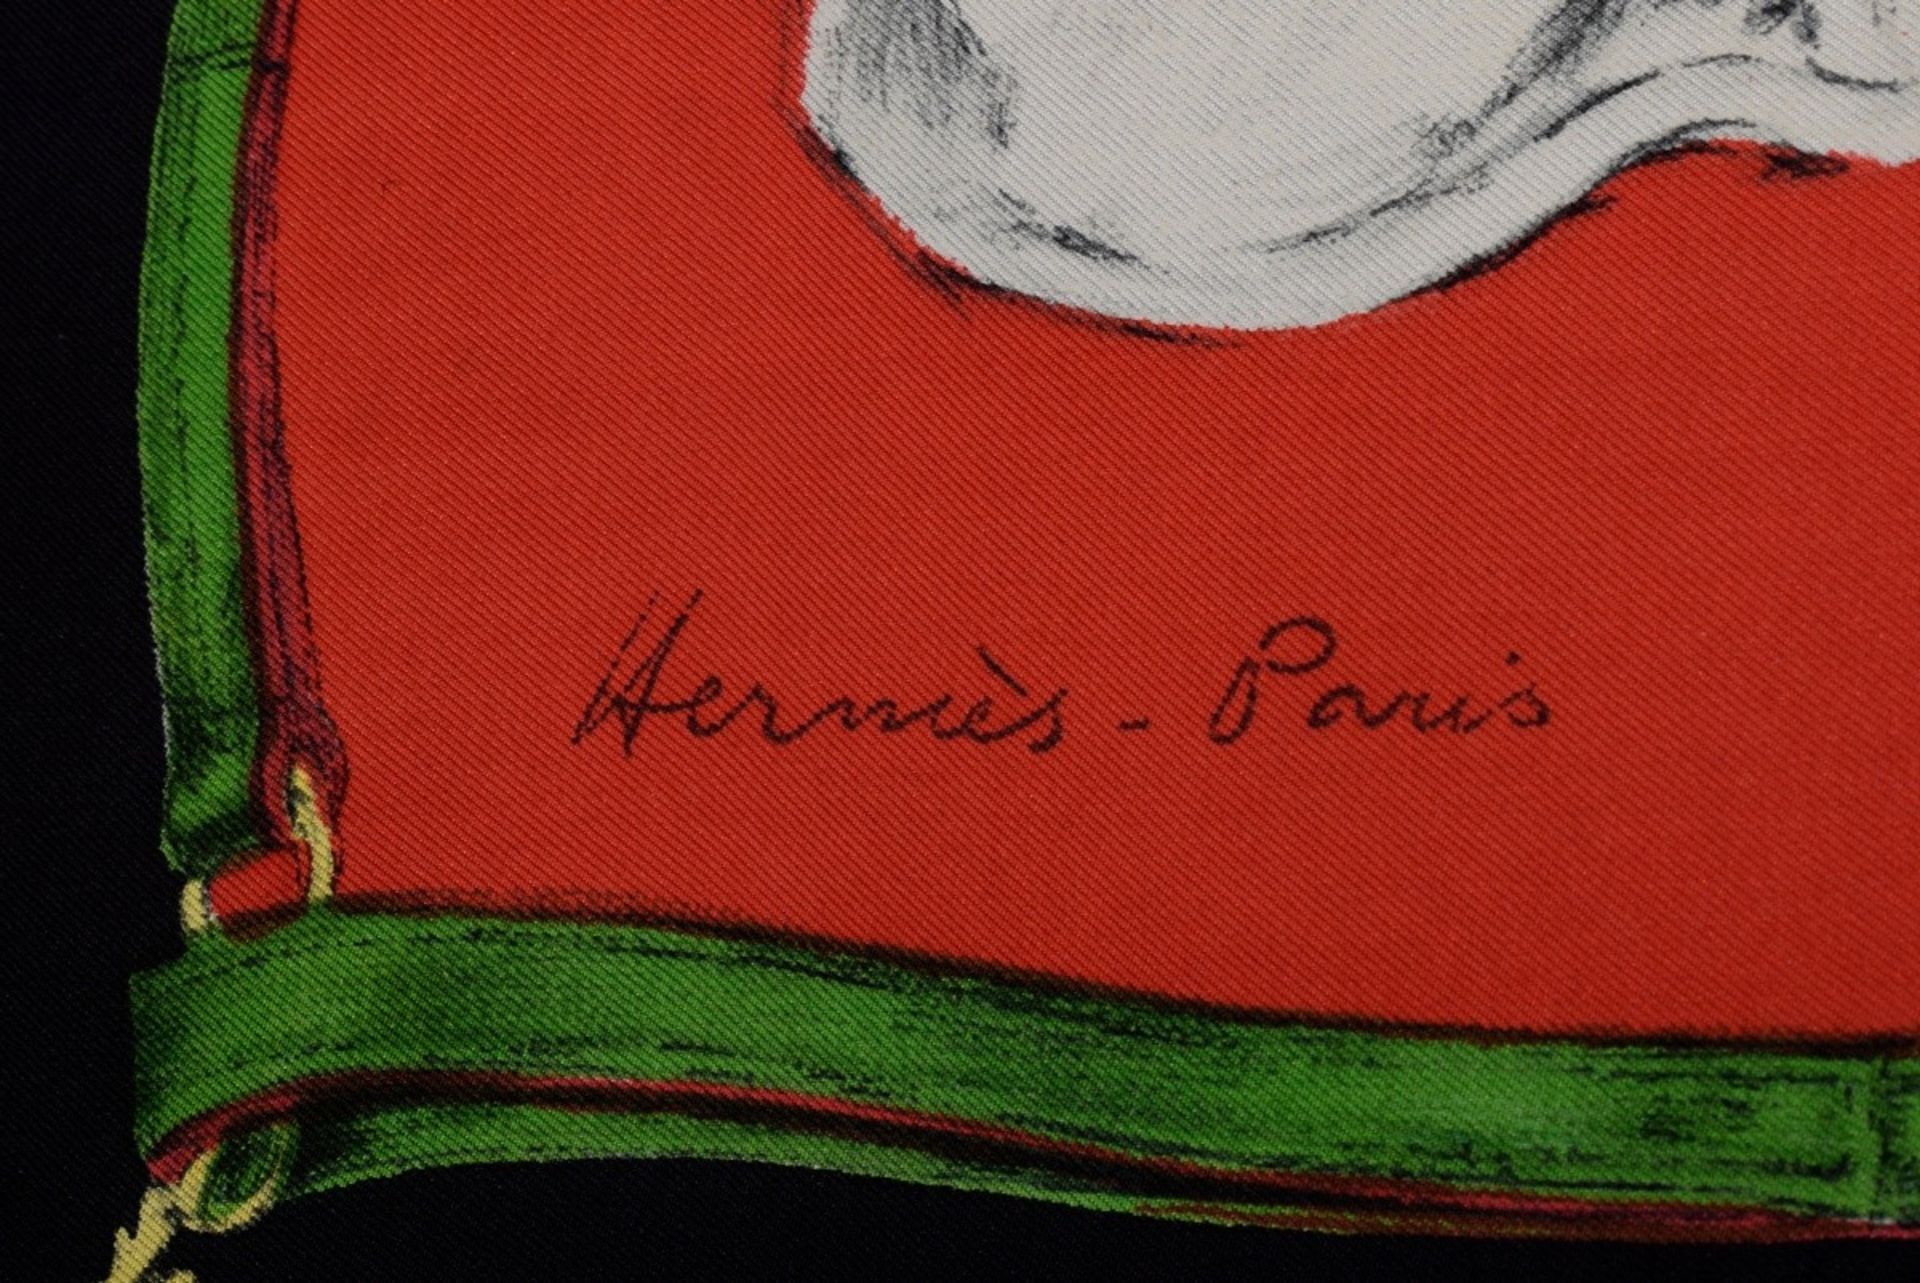 Hermès silk carré "Les Levriers", red/black, design: Xavier de Poret 1955, 90x90cm, shield missing, - Image 4 of 4